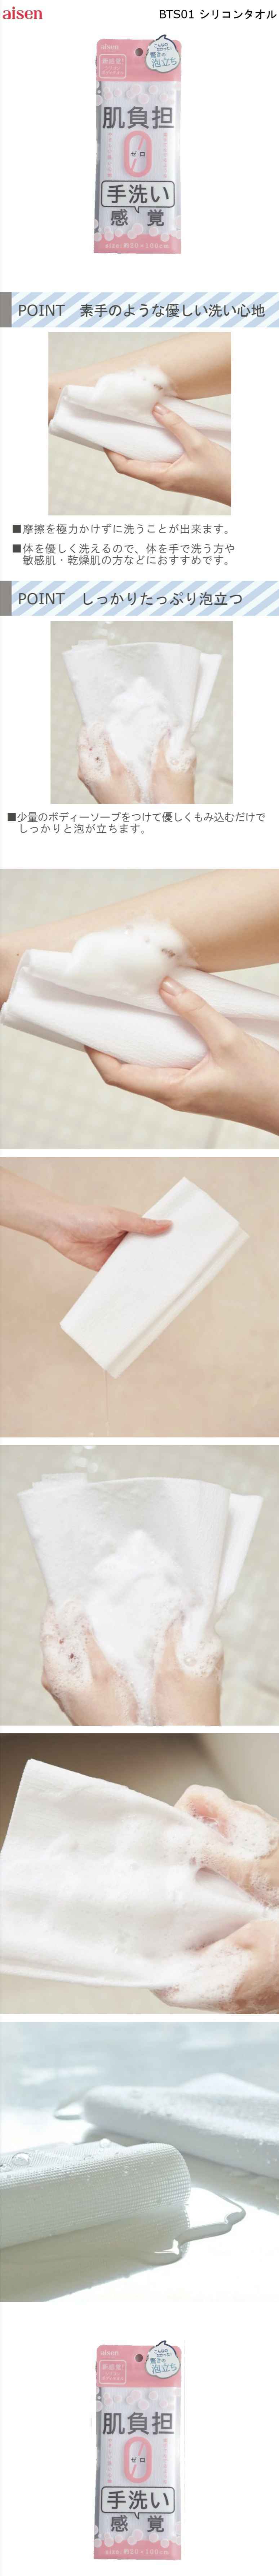 生綿浴用タオル ボディタオル オーガニックコットン100% 約80×20cm Cotone コトーネ